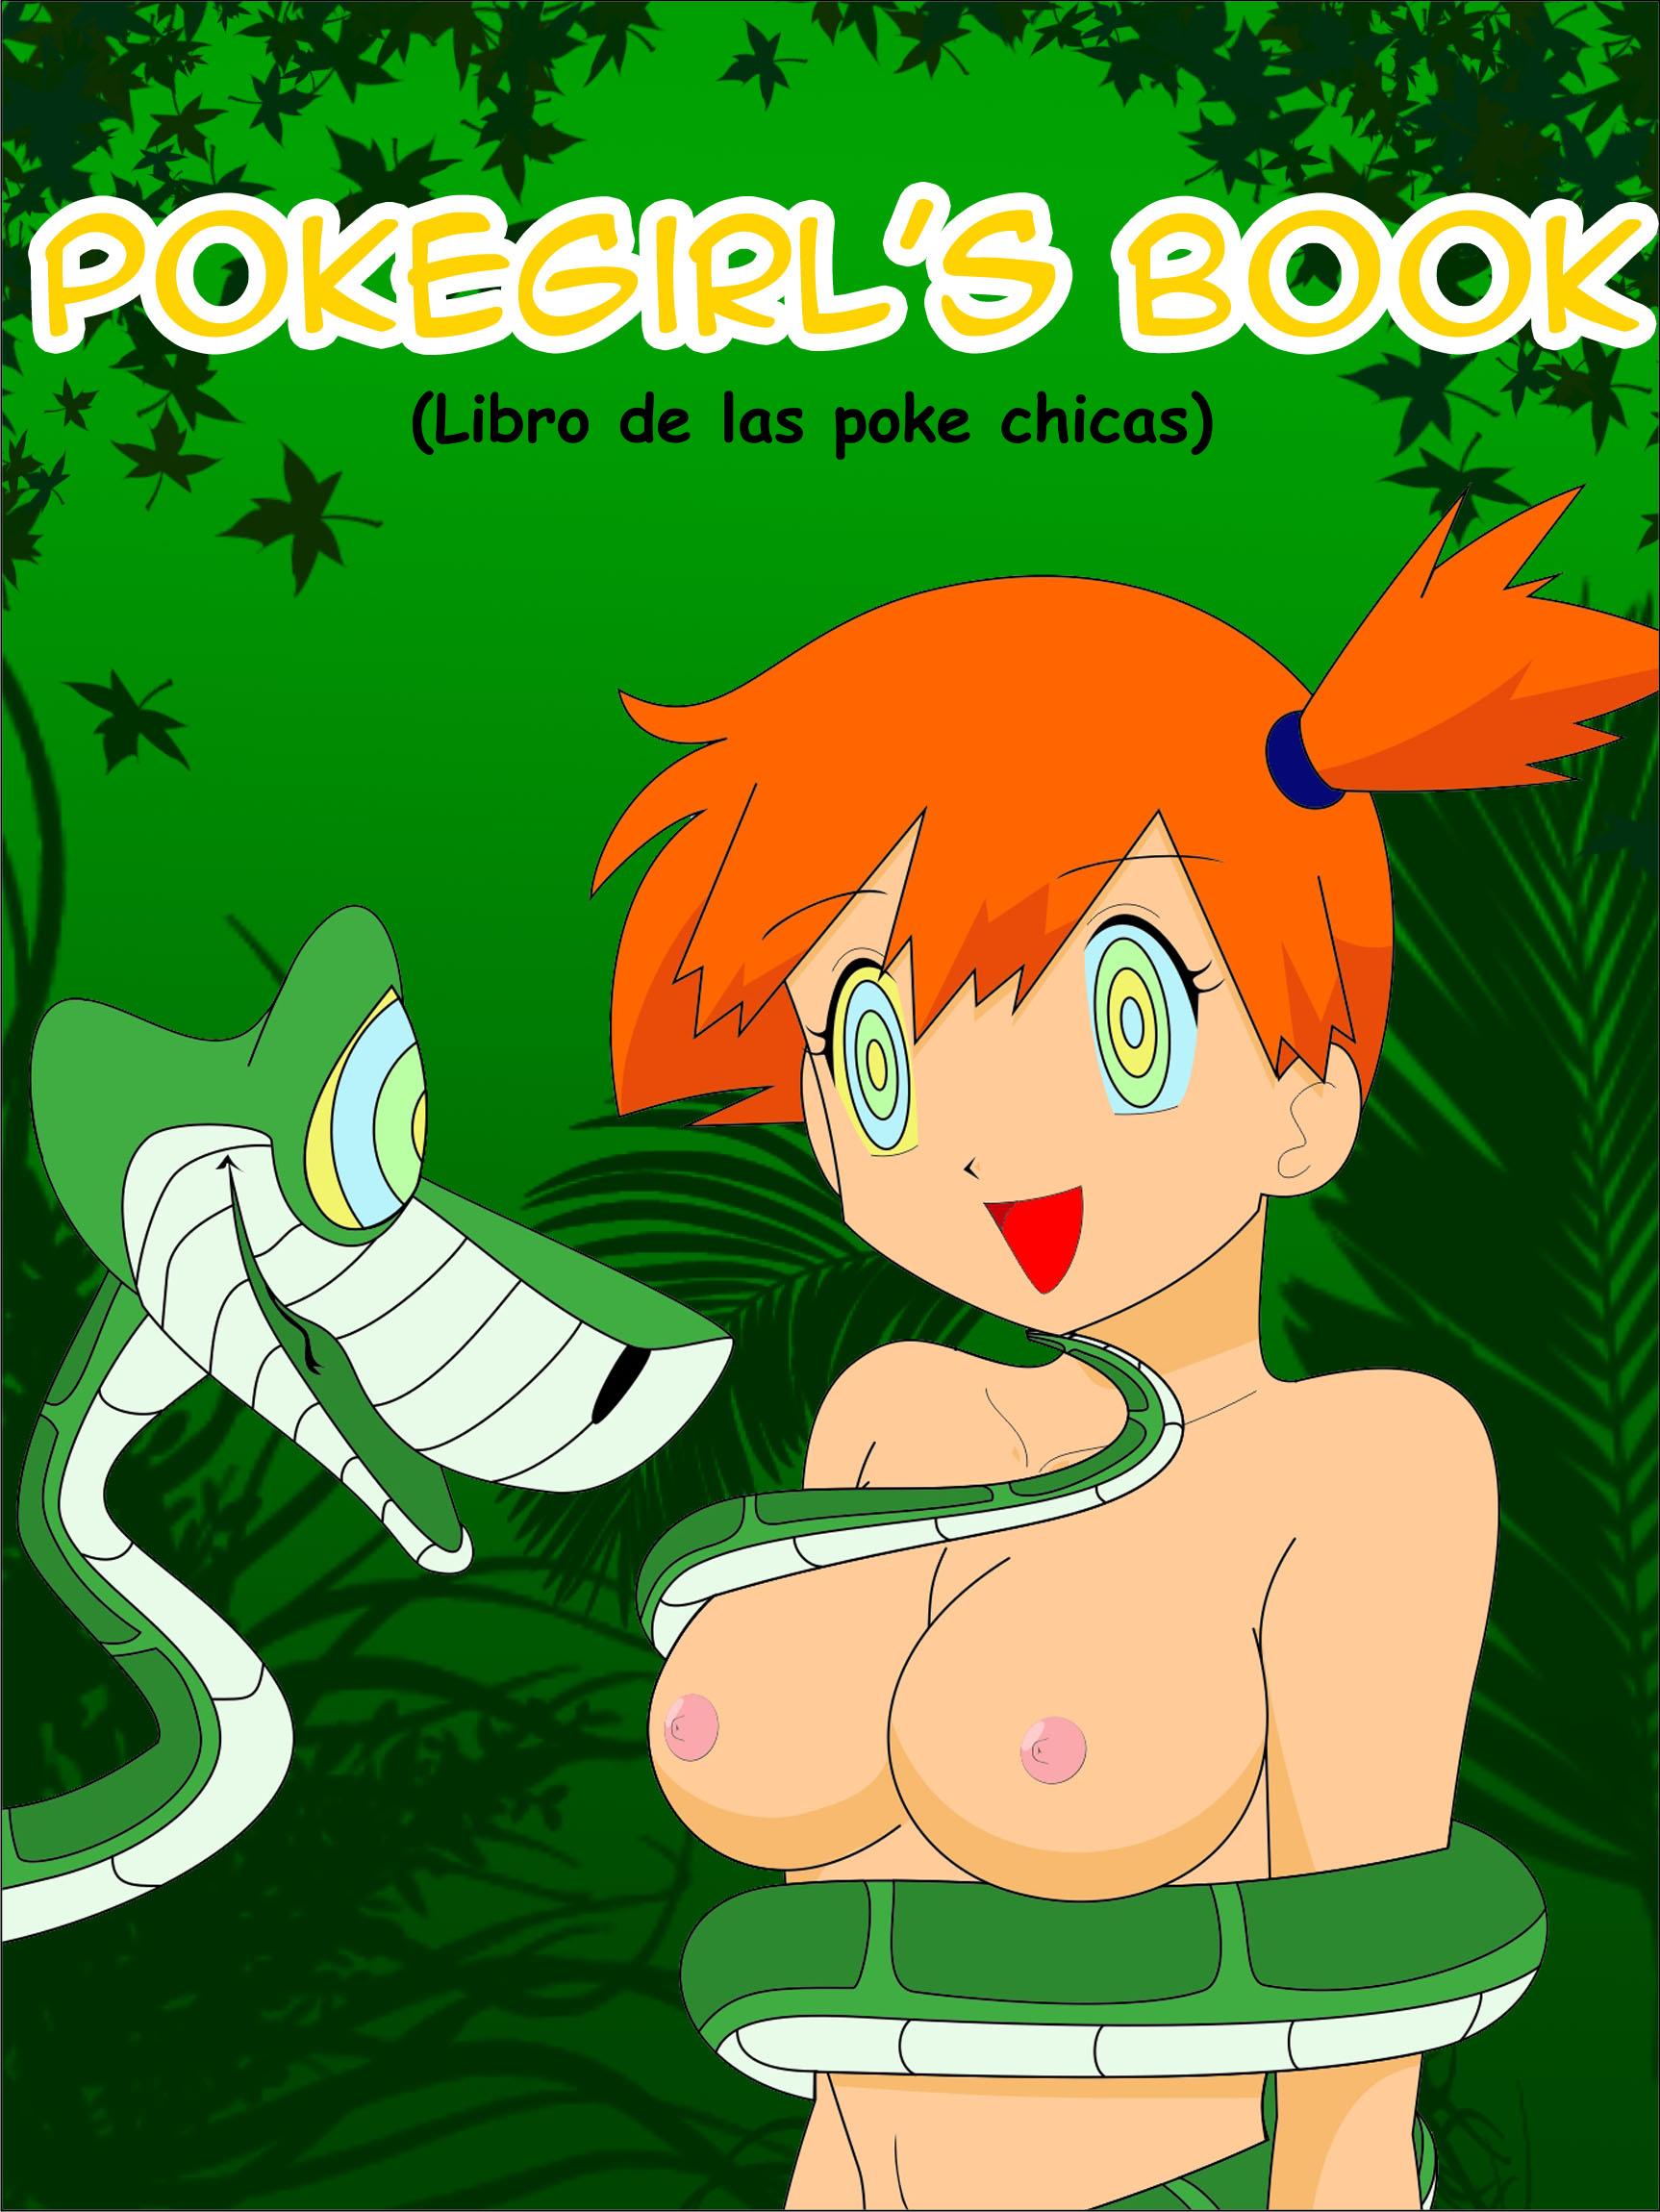 Pokegirls Book Libro de las poke chicas Pokemon The Jungle Book Spanish0